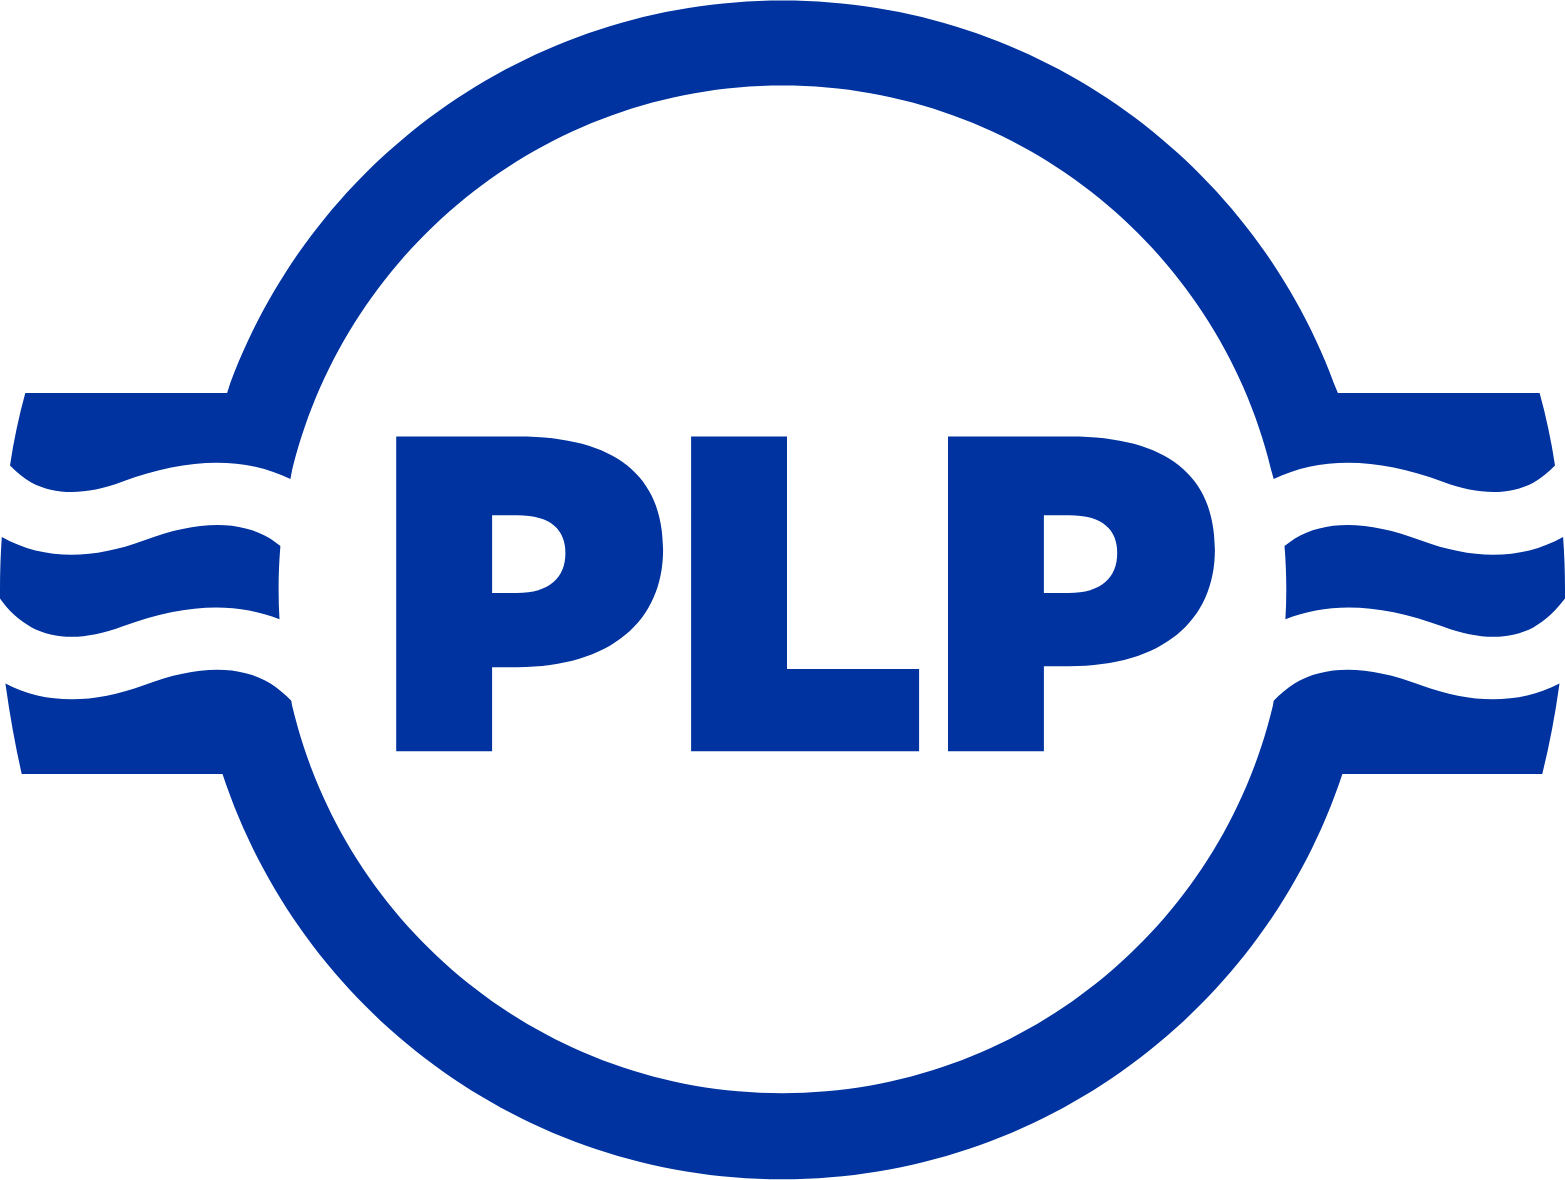 Preformed Line Products logo (transparent PNG)